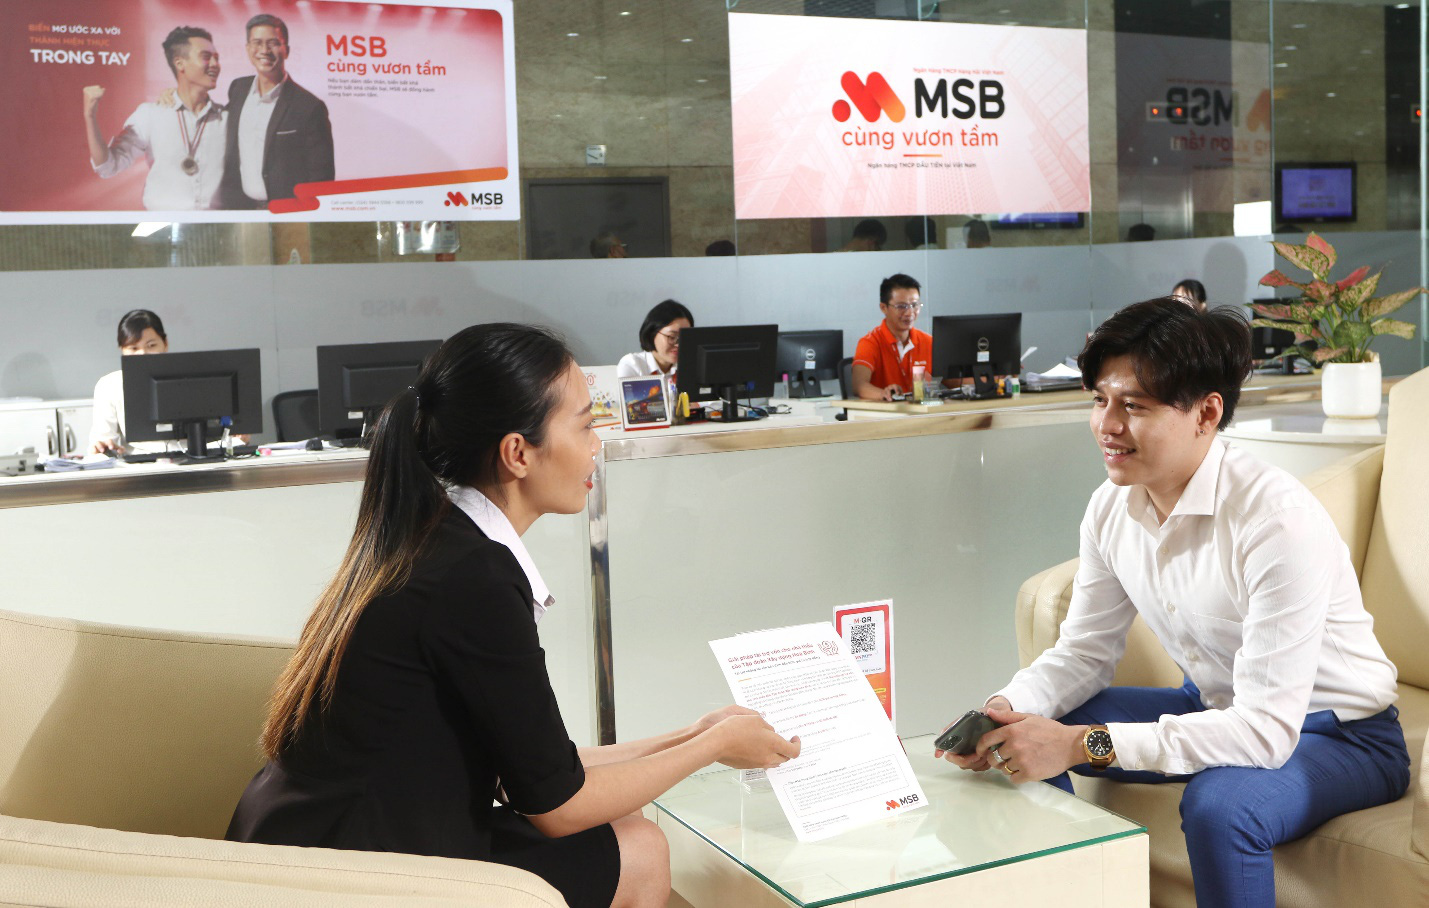 Dịch vụ chuyển tiền quốc tế siêu nhanh và phí giao dịch 0 đồng của ngân hàng MSB